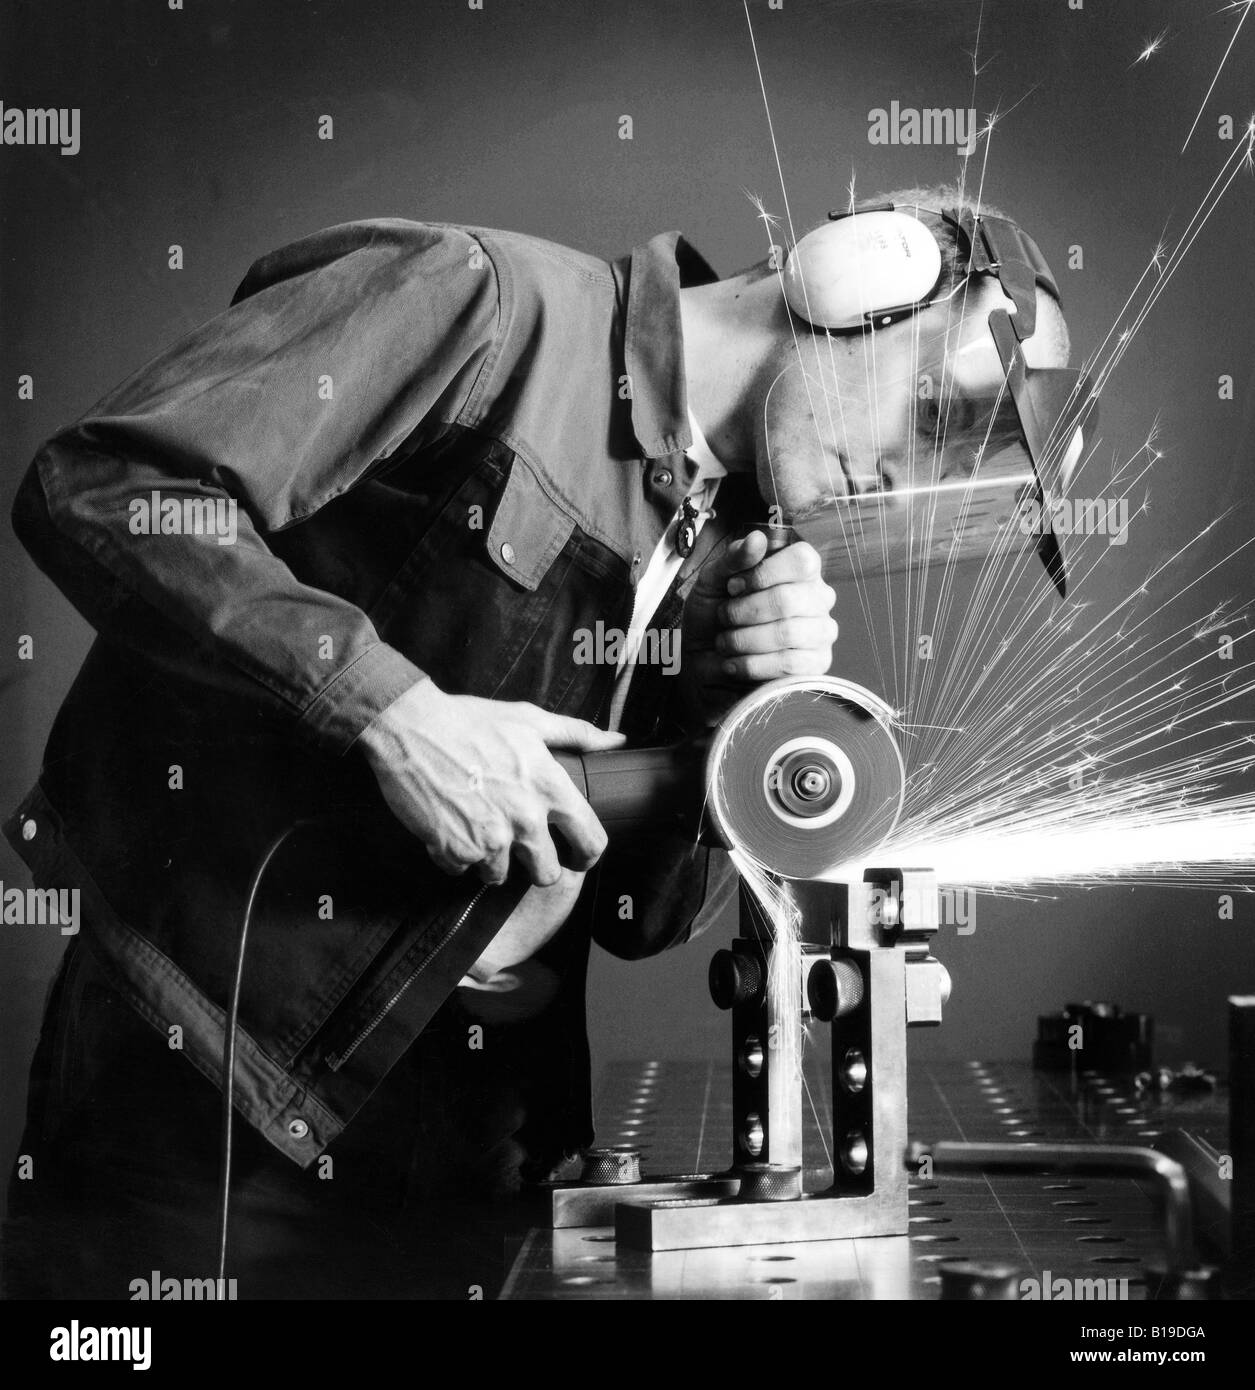 Schlosser mit Handschleifmaschine und Gesichtsschutz Schleifen ein Stück  Metall, fliegende Funken, schwarz und weiß, Deutschland Stockfotografie -  Alamy